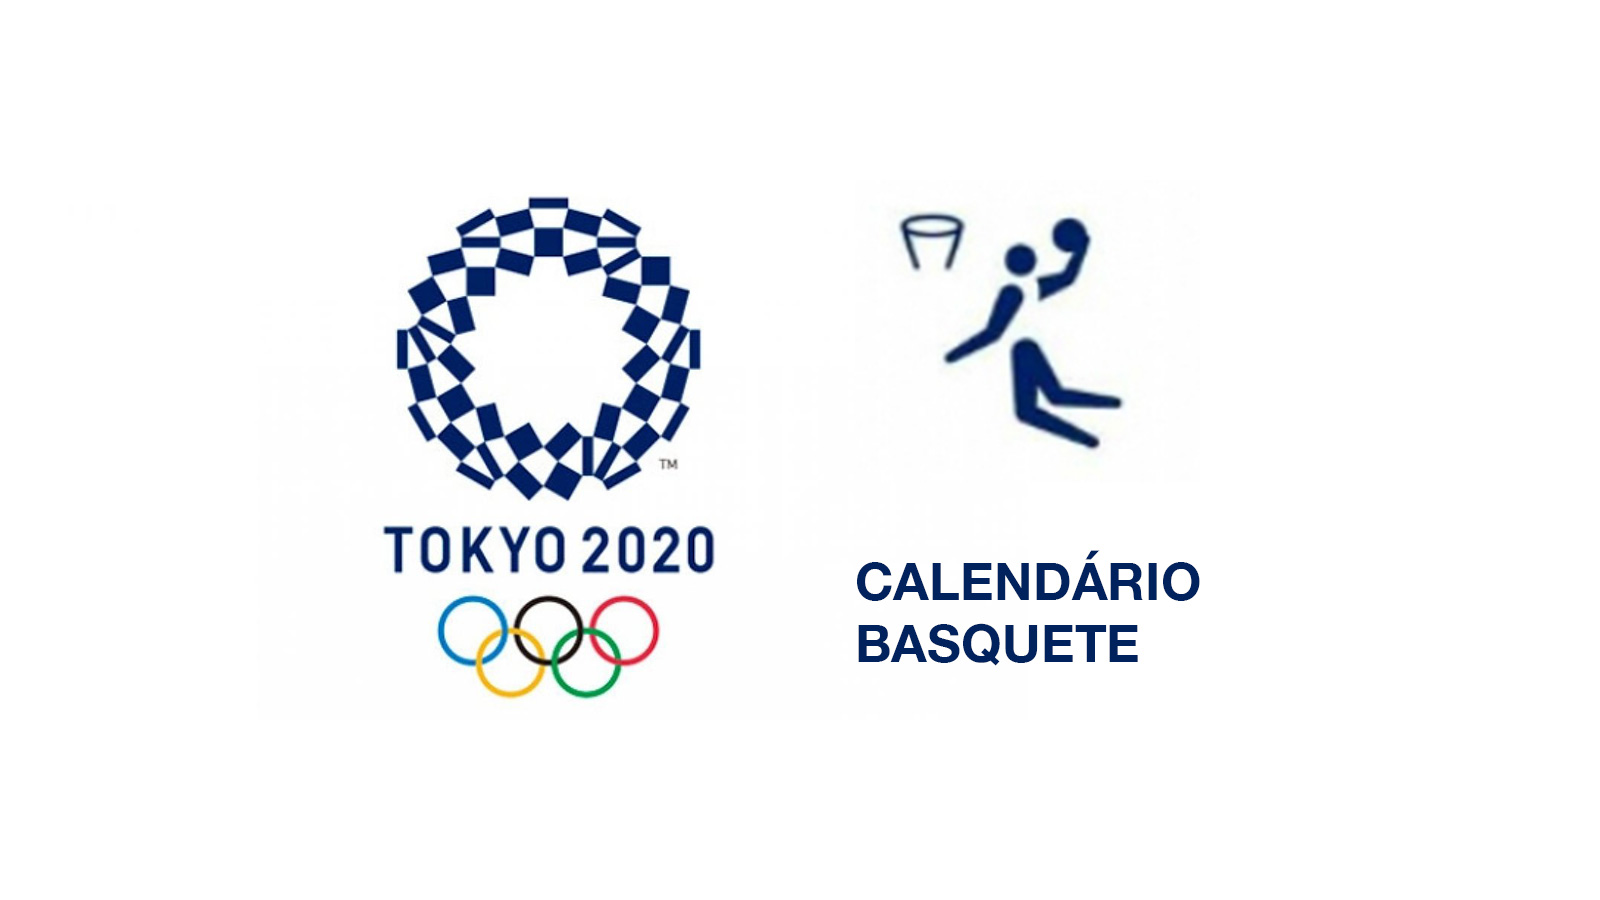 Calendário Basquete Olimpíadas Tóquio